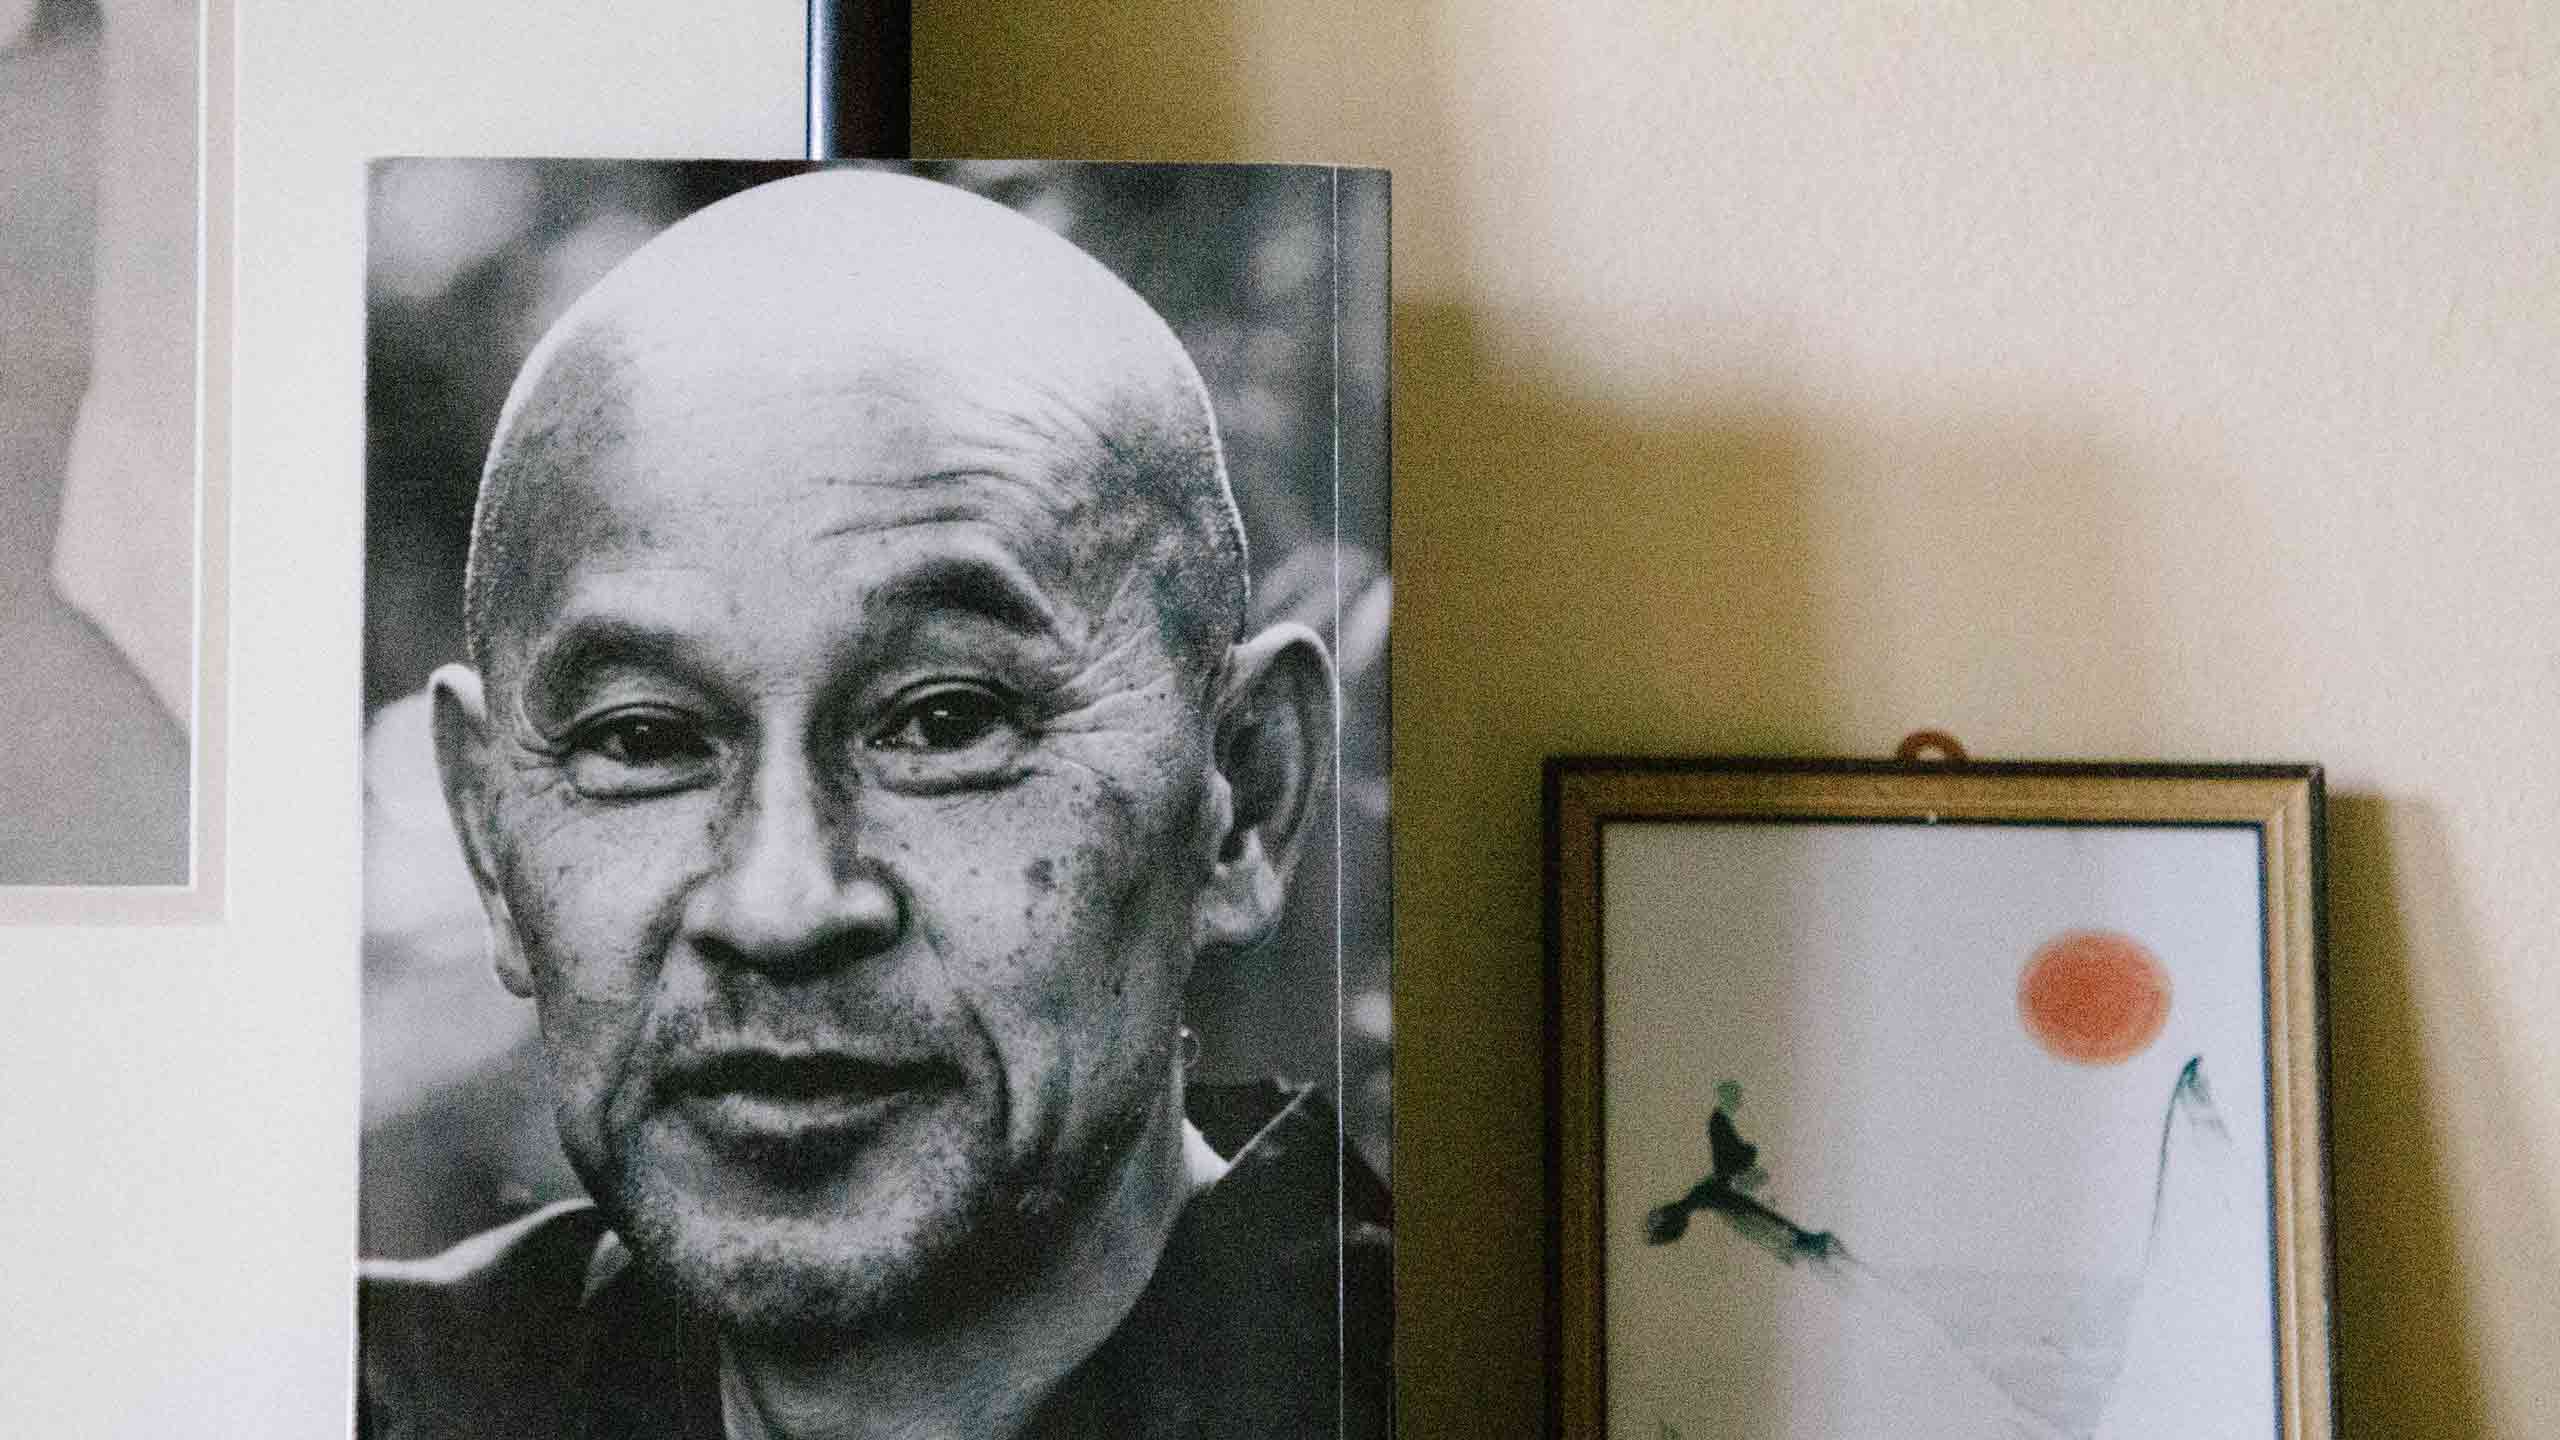 Buchcover Zen Geist Anfänger Geist mit dem Kopf von Shunryu Suzuki Roshi neben einem Bild an die Wand gelehnt